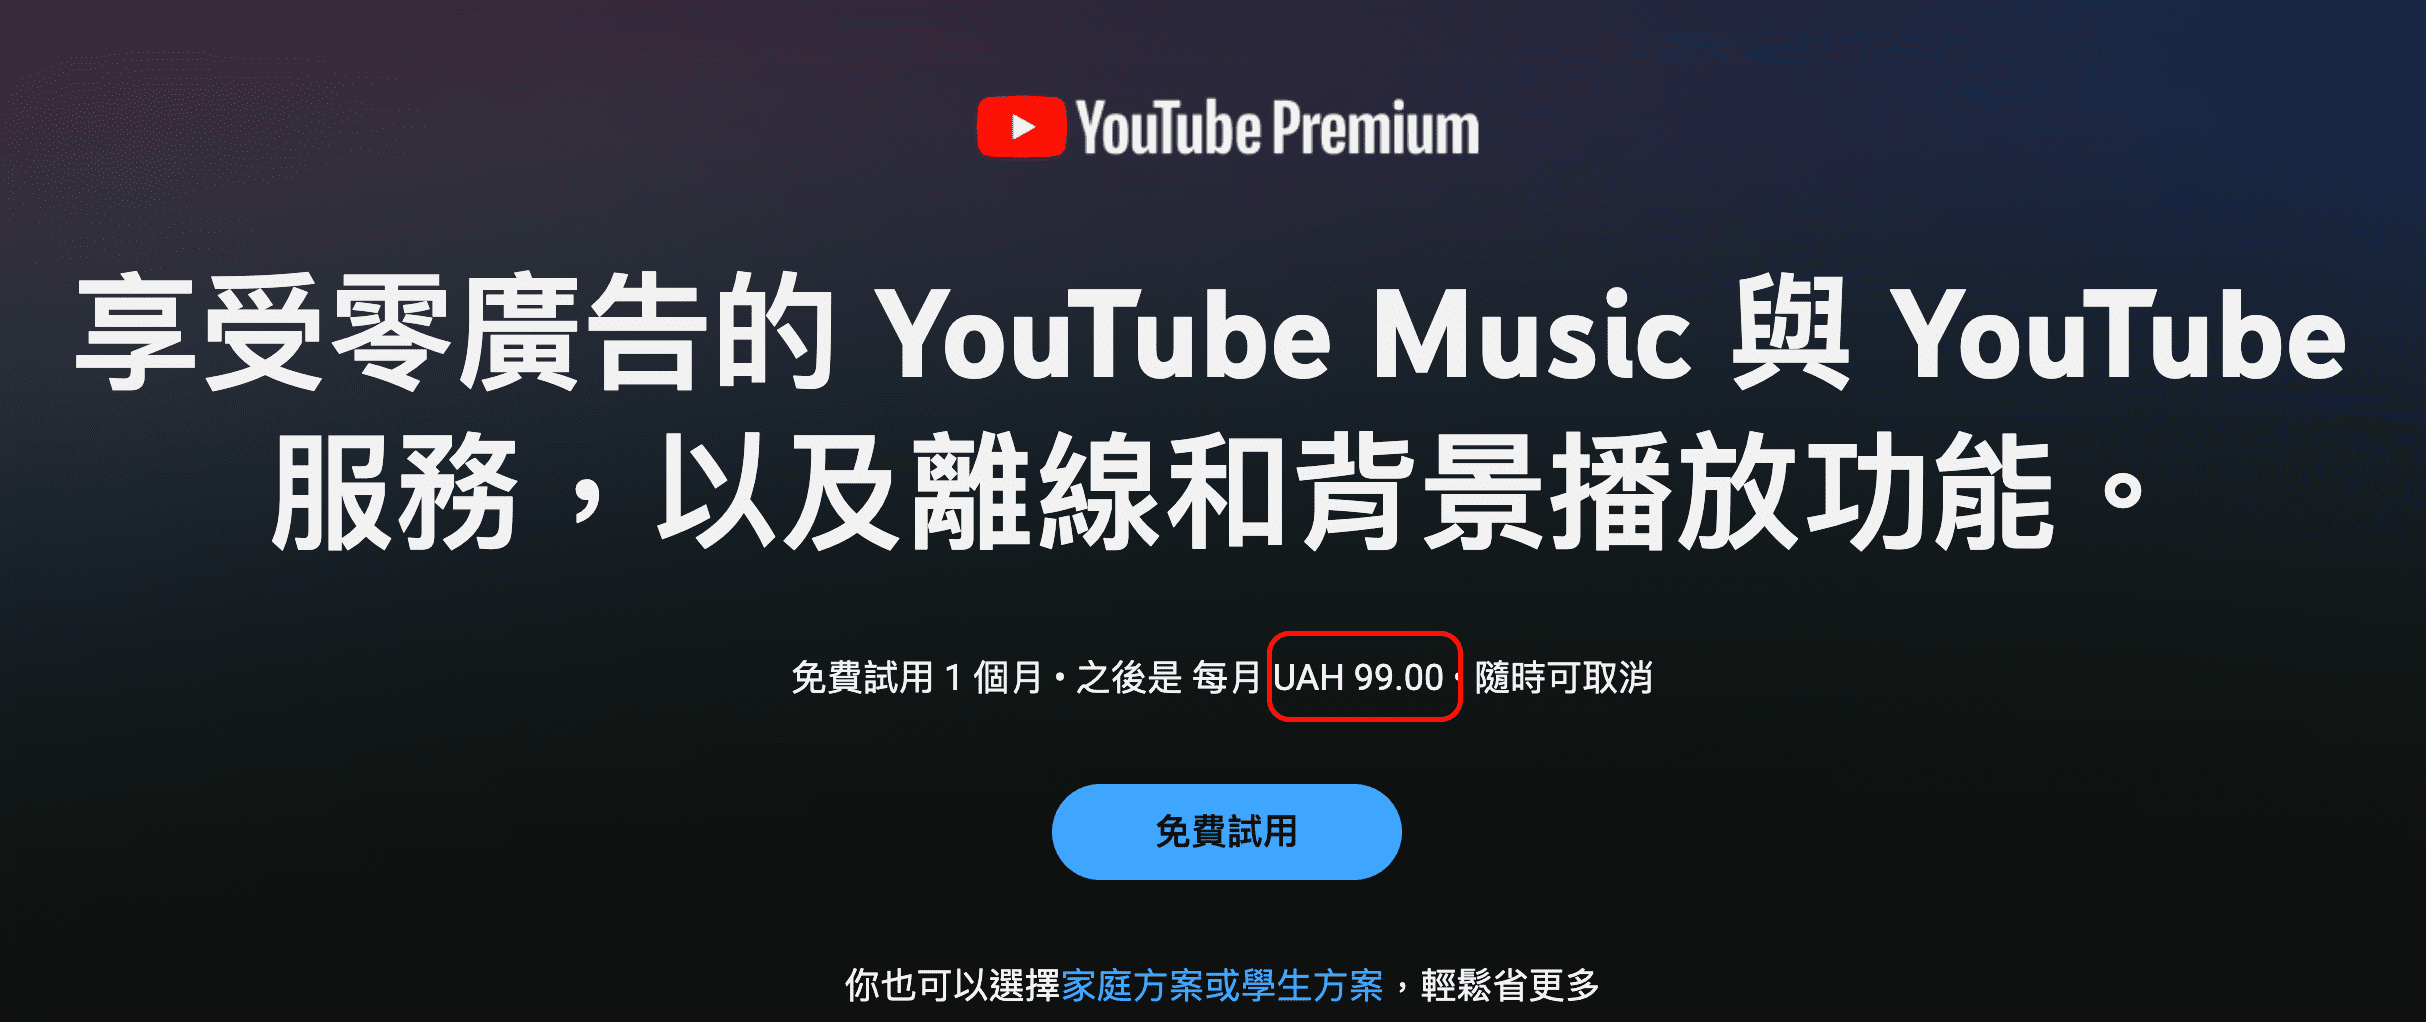 YouTube Premium 烏克蘭低價購買4